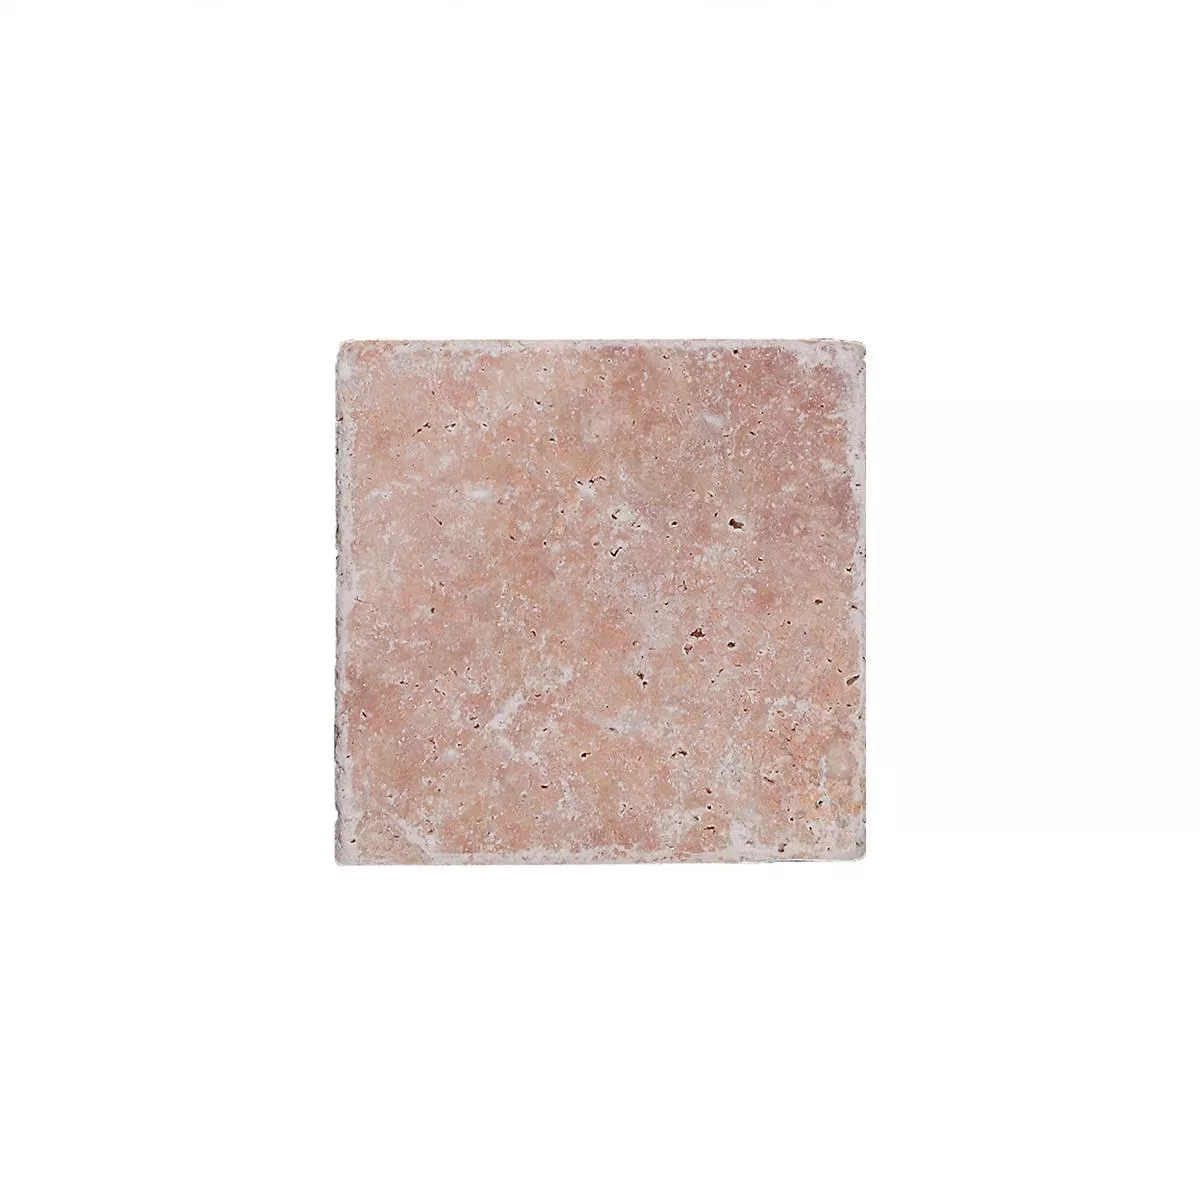 Πρότυπο Πλακάκια Aπό Φυσική Πέτρα Είδος Ασβεστόλιθου Usantos Rosso 10x10cm